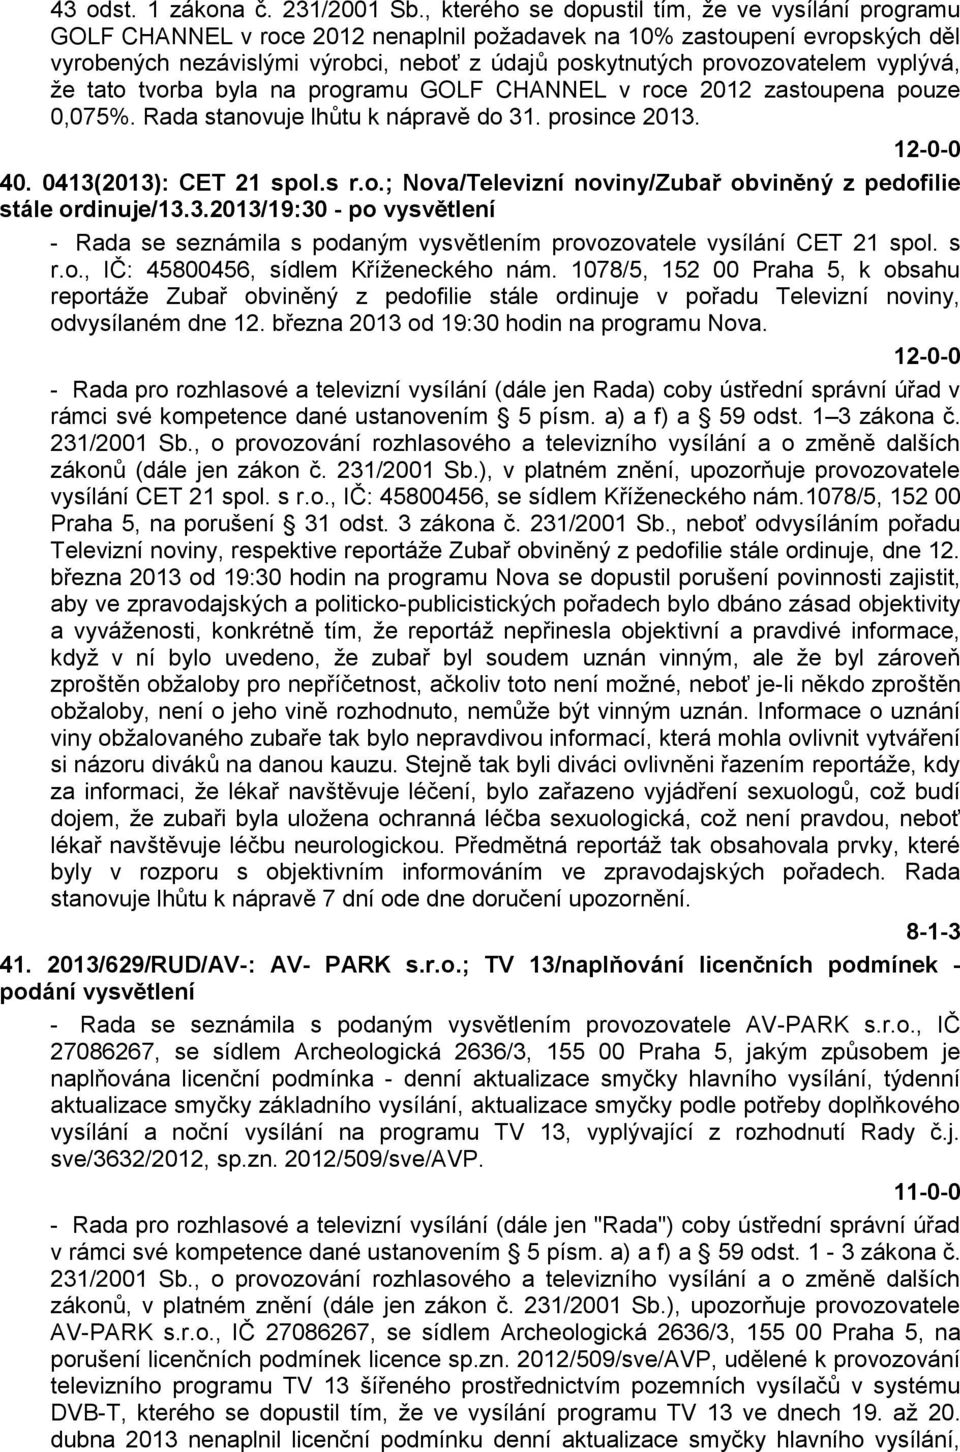 provozovatelem vyplývá, že tato tvorba byla na programu GOLF CHANNEL v roce 2012 zastoupena pouze 0,075%. Rada stanovuje lhůtu k nápravě do 31. prosince 2013. 40. 0413(2013): CET 21 spol.s r.o.; Nova/Televizní noviny/zubař obviněný z pedofilie stále ordinuje/13.